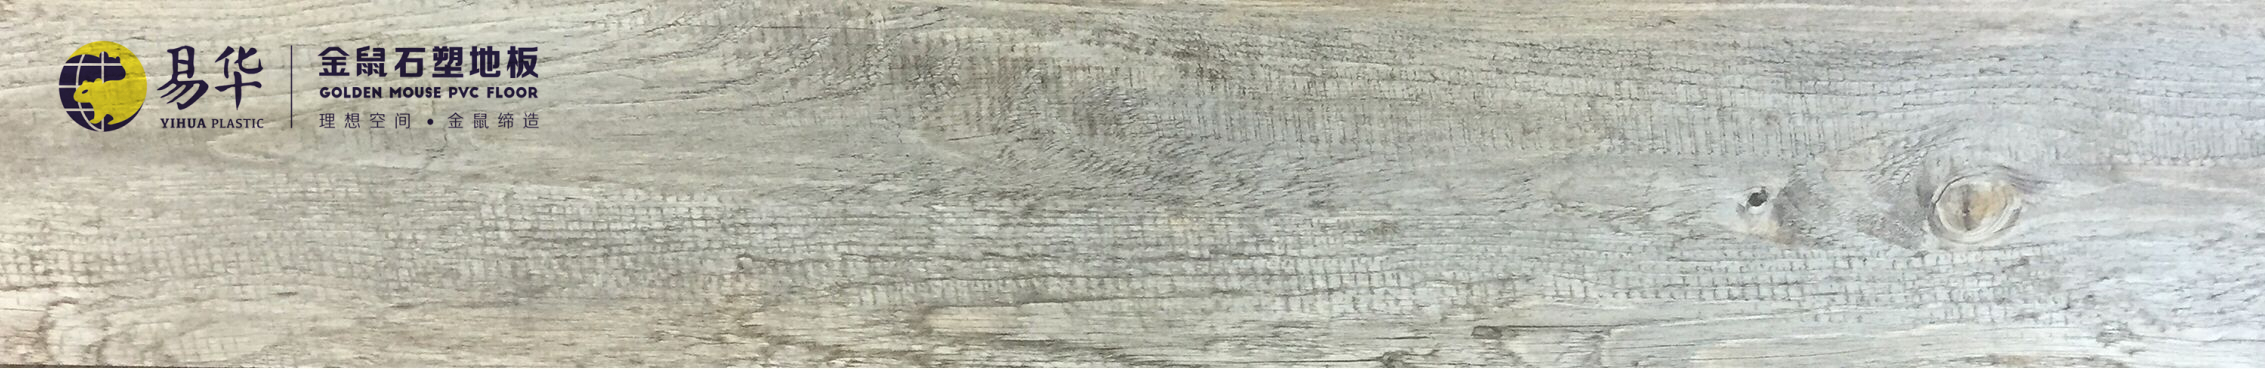 金鼠PVC地板木纹WM07